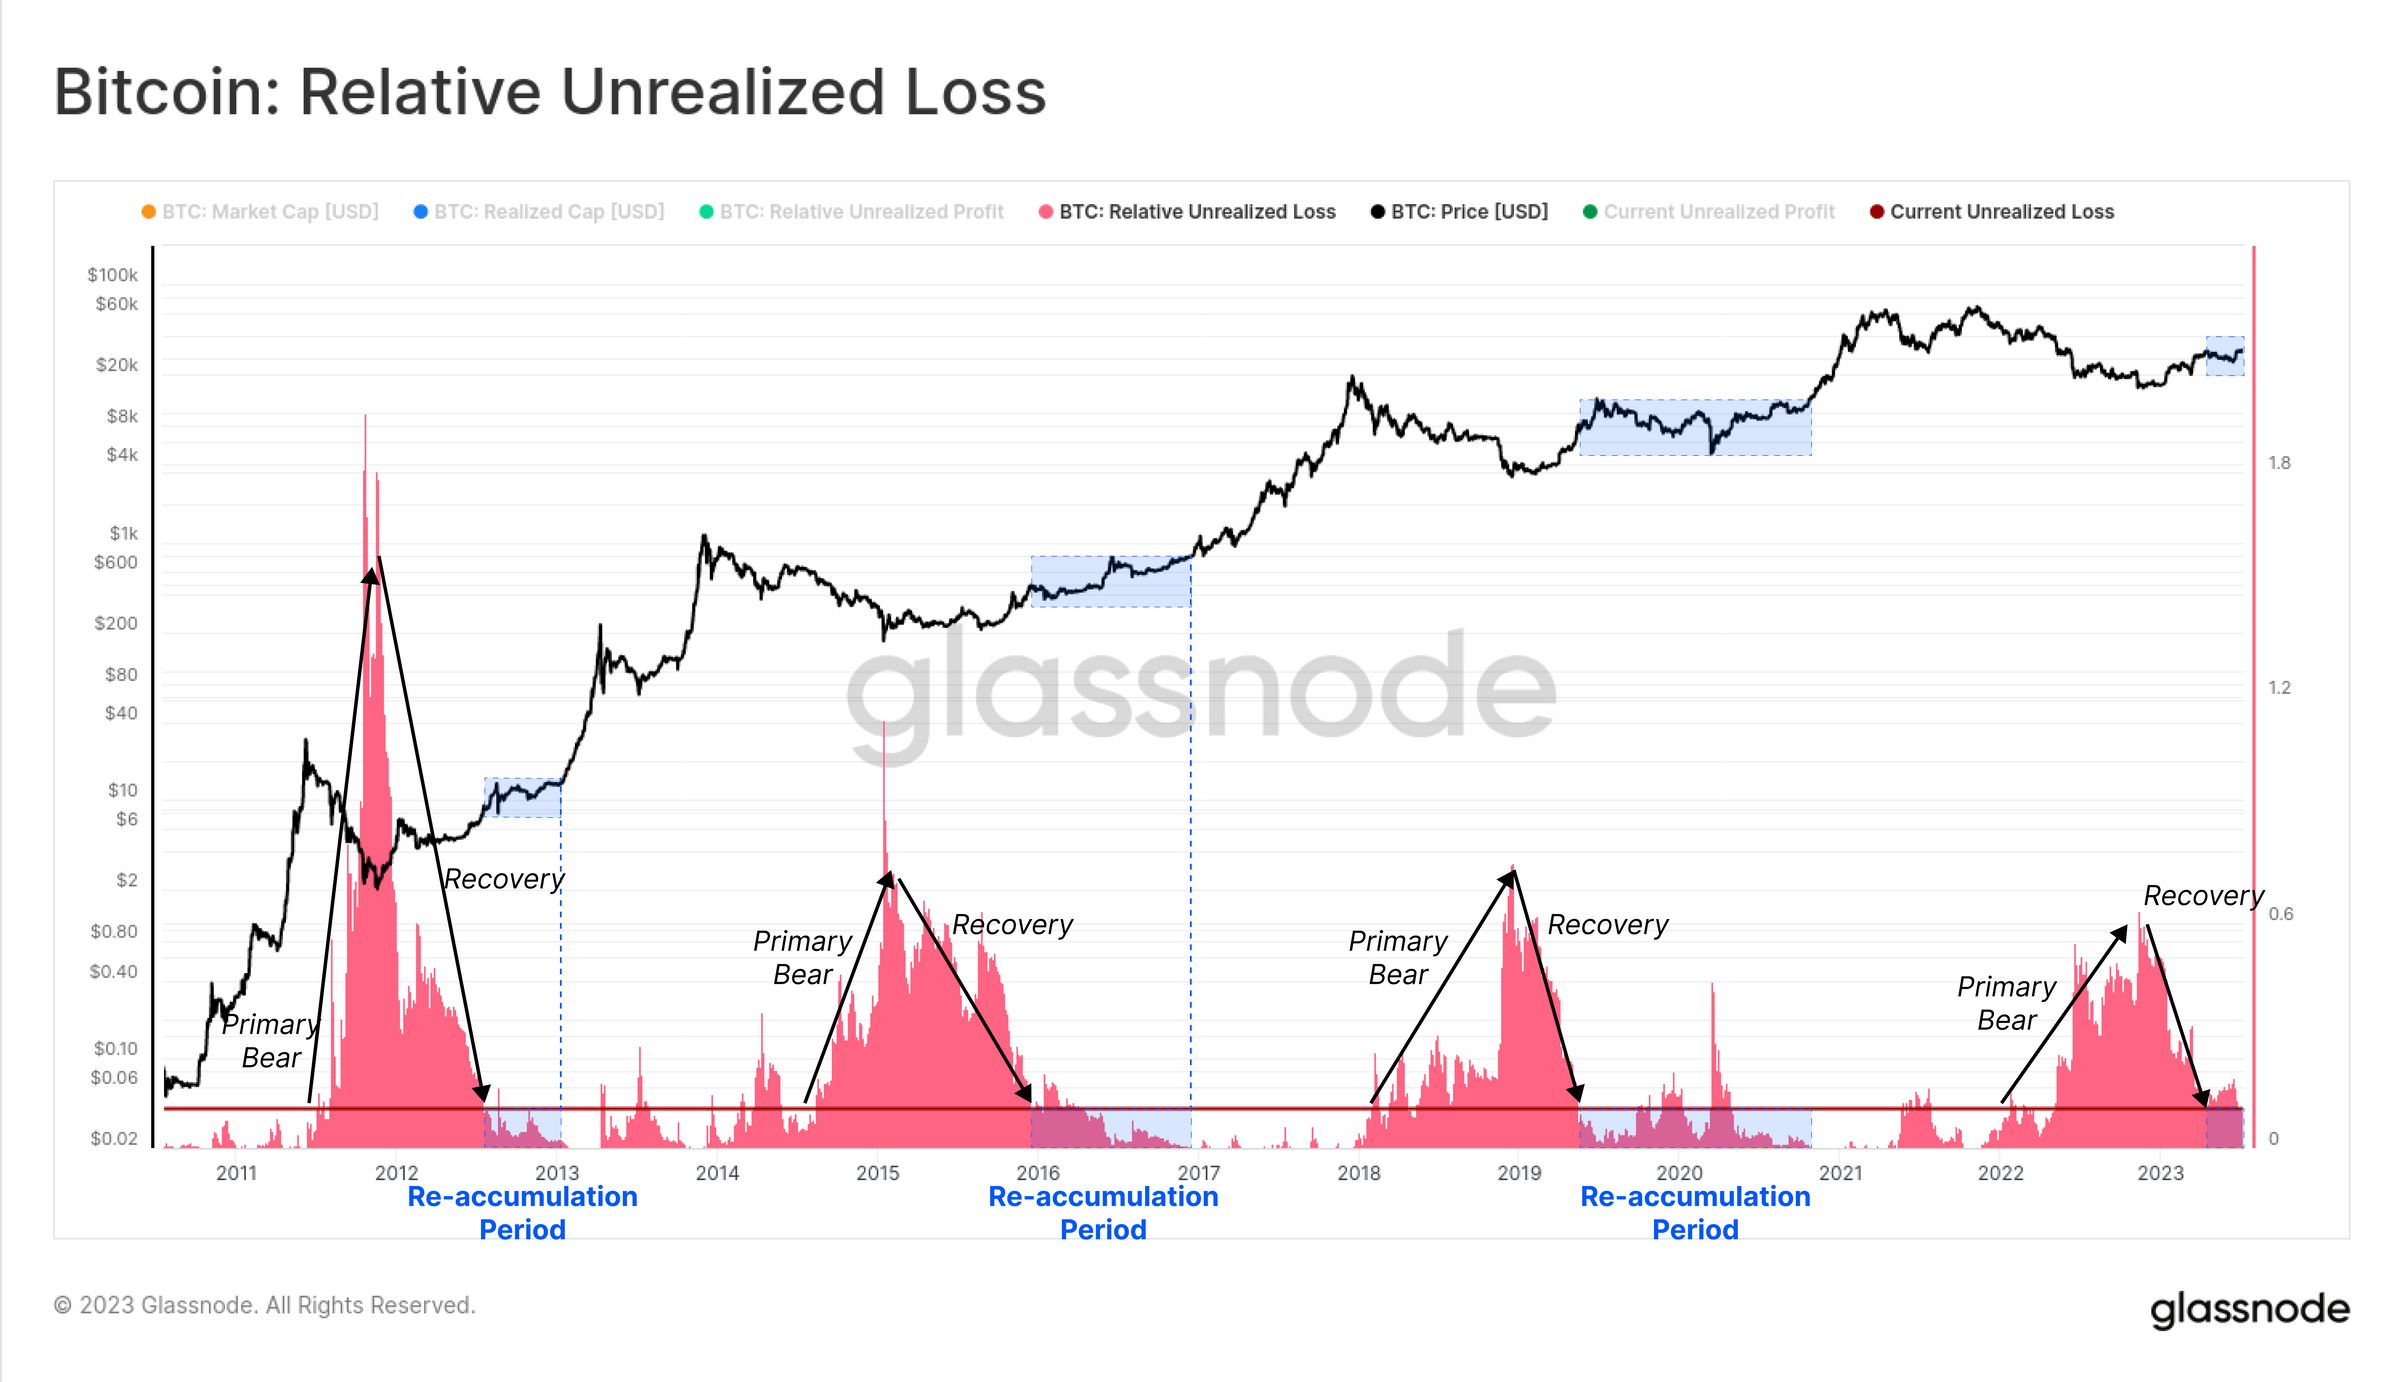 Bitcoin Relative Unrealized Loss | Source: Glassnode